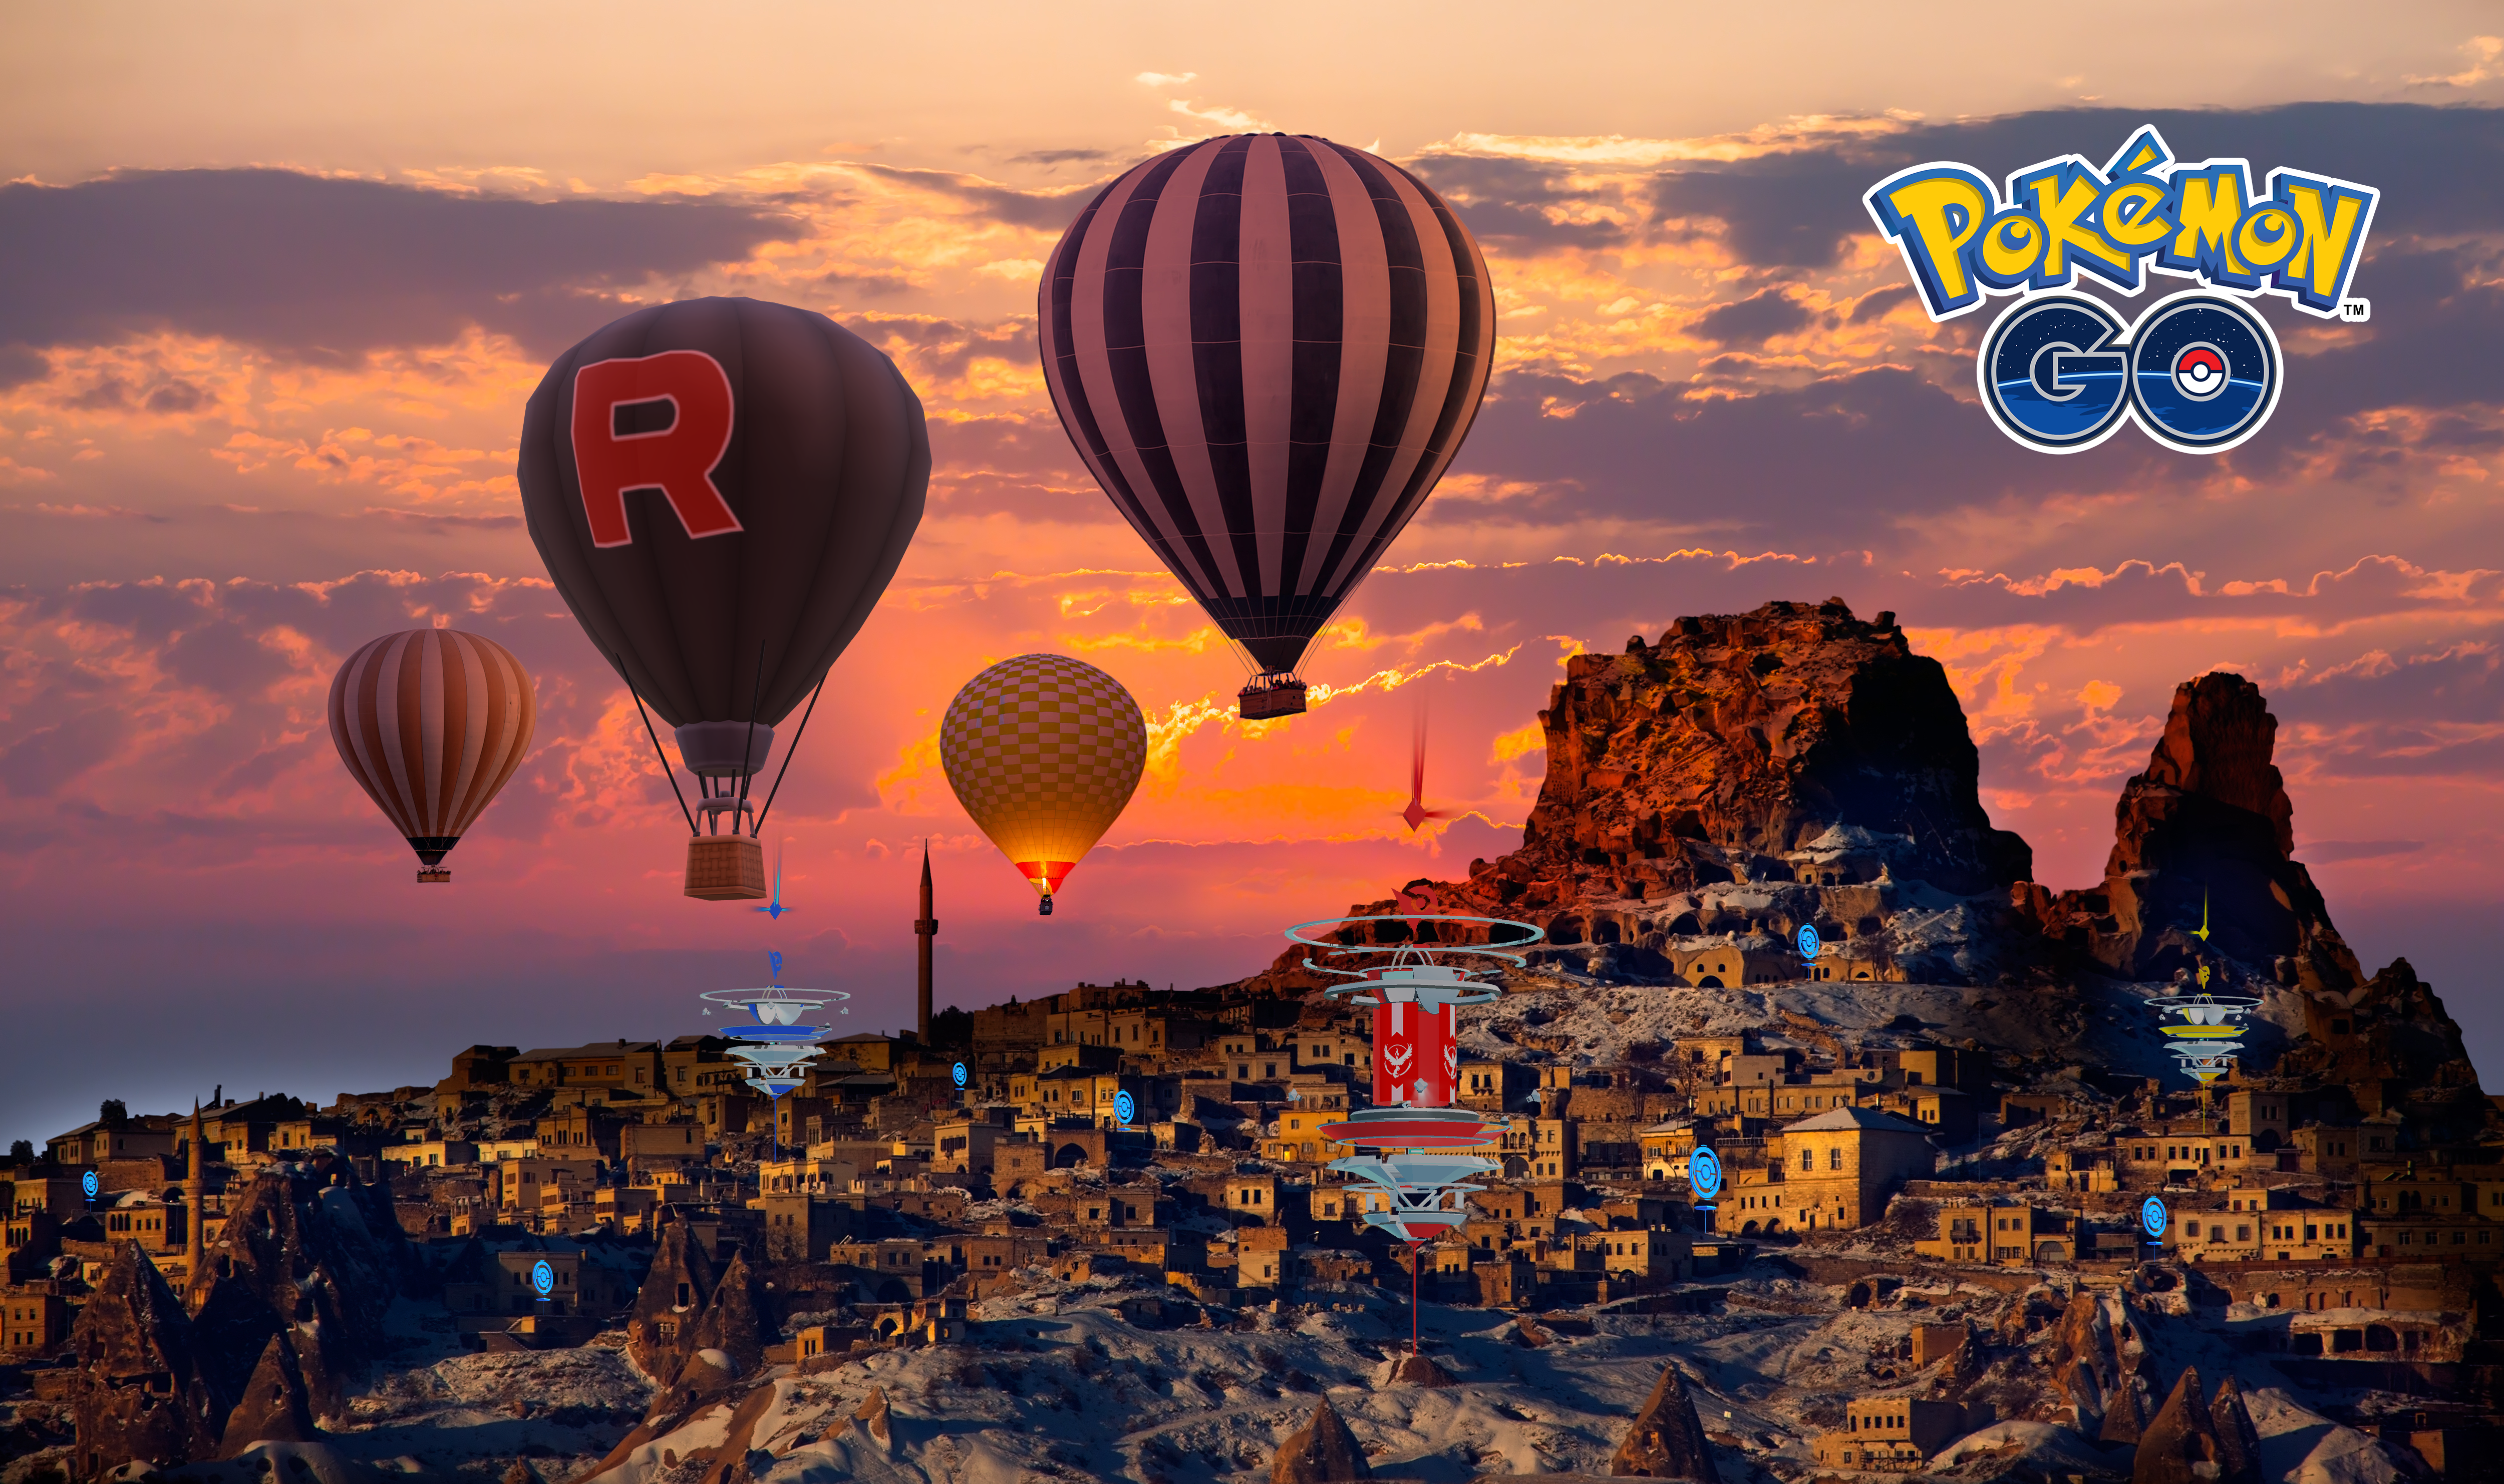 Pokémon GO’nun Türkçe Versiyonu Basına Tanıtıldı!